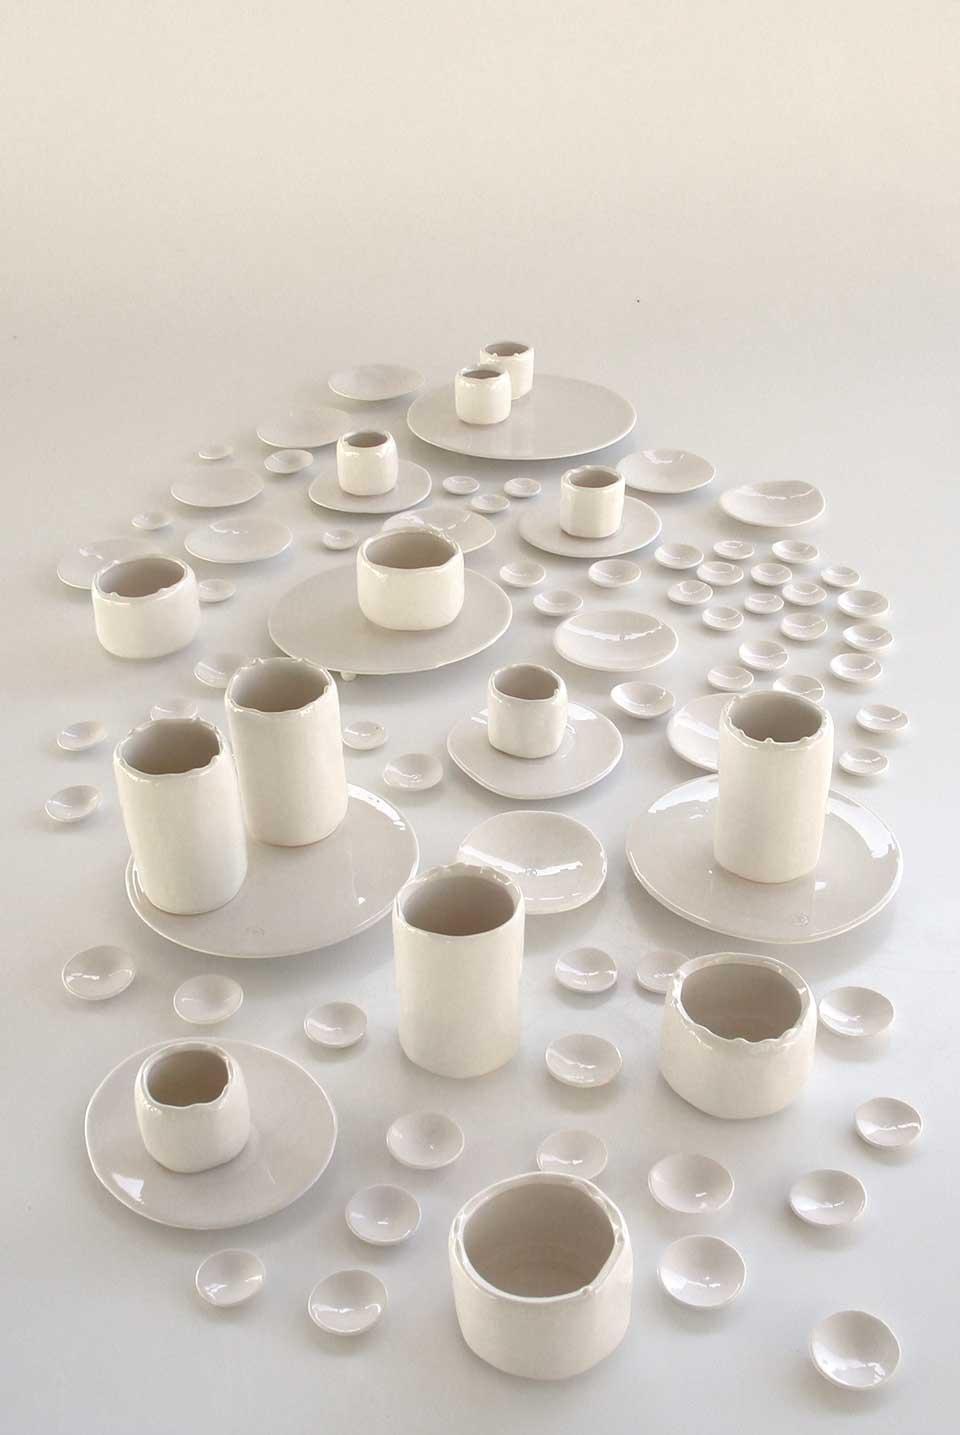 Le ceramiche fluide realizzate da
Arago Design